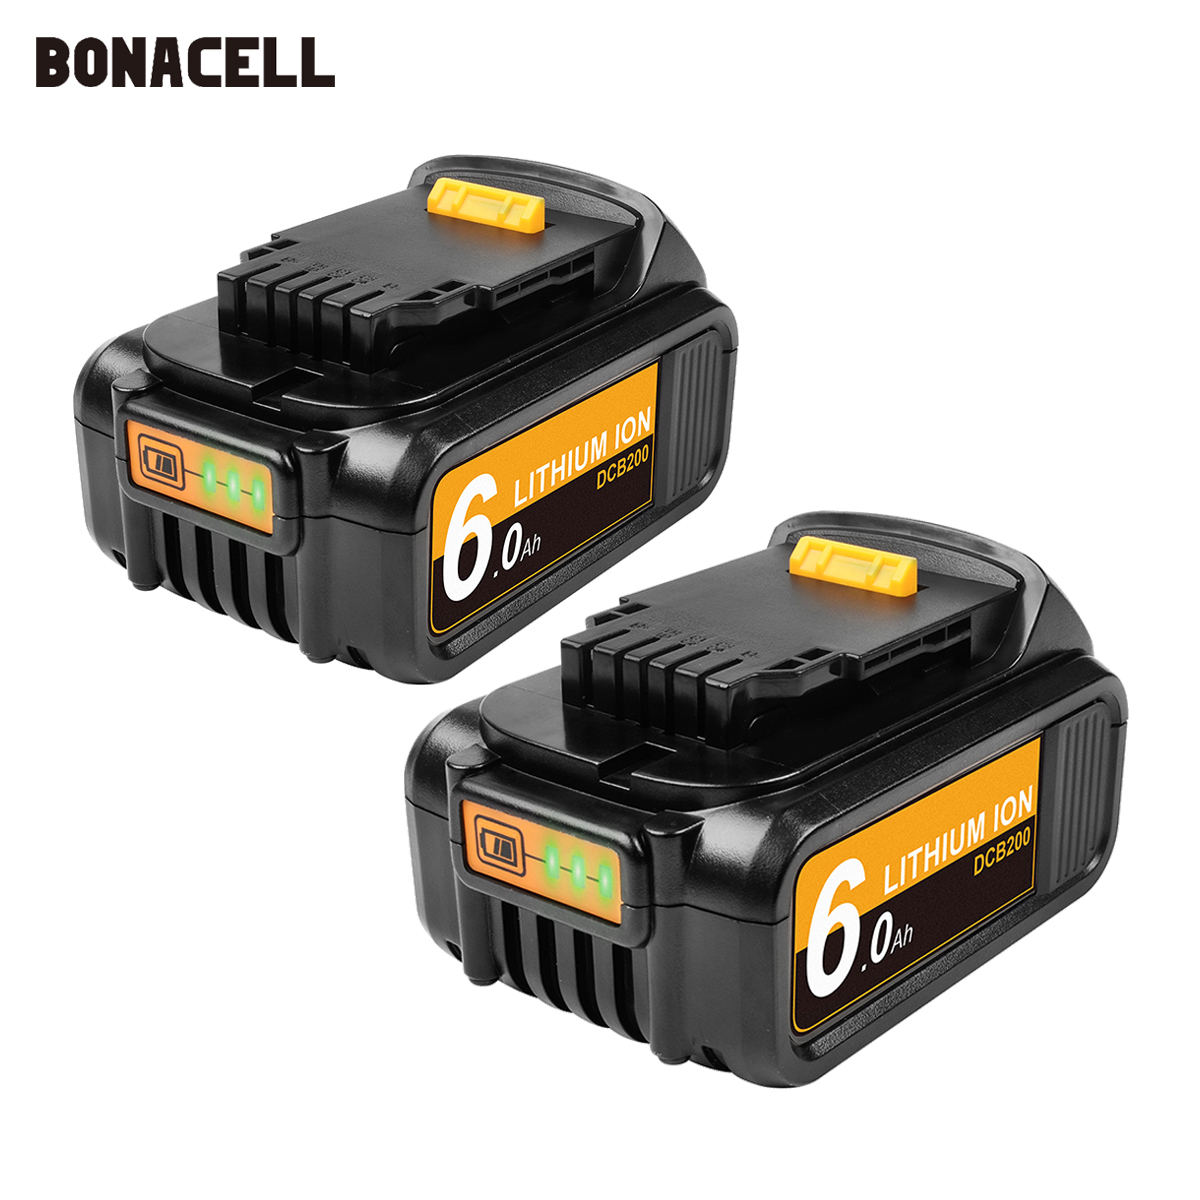 

Bonacell 6000mAh 18V/20V XR for Dewalt Power Tool Battery for DCB180 DCB181 DCB182 DCB201 DCB201-2 DCB200 DCB200-2 DCB204-2 L50